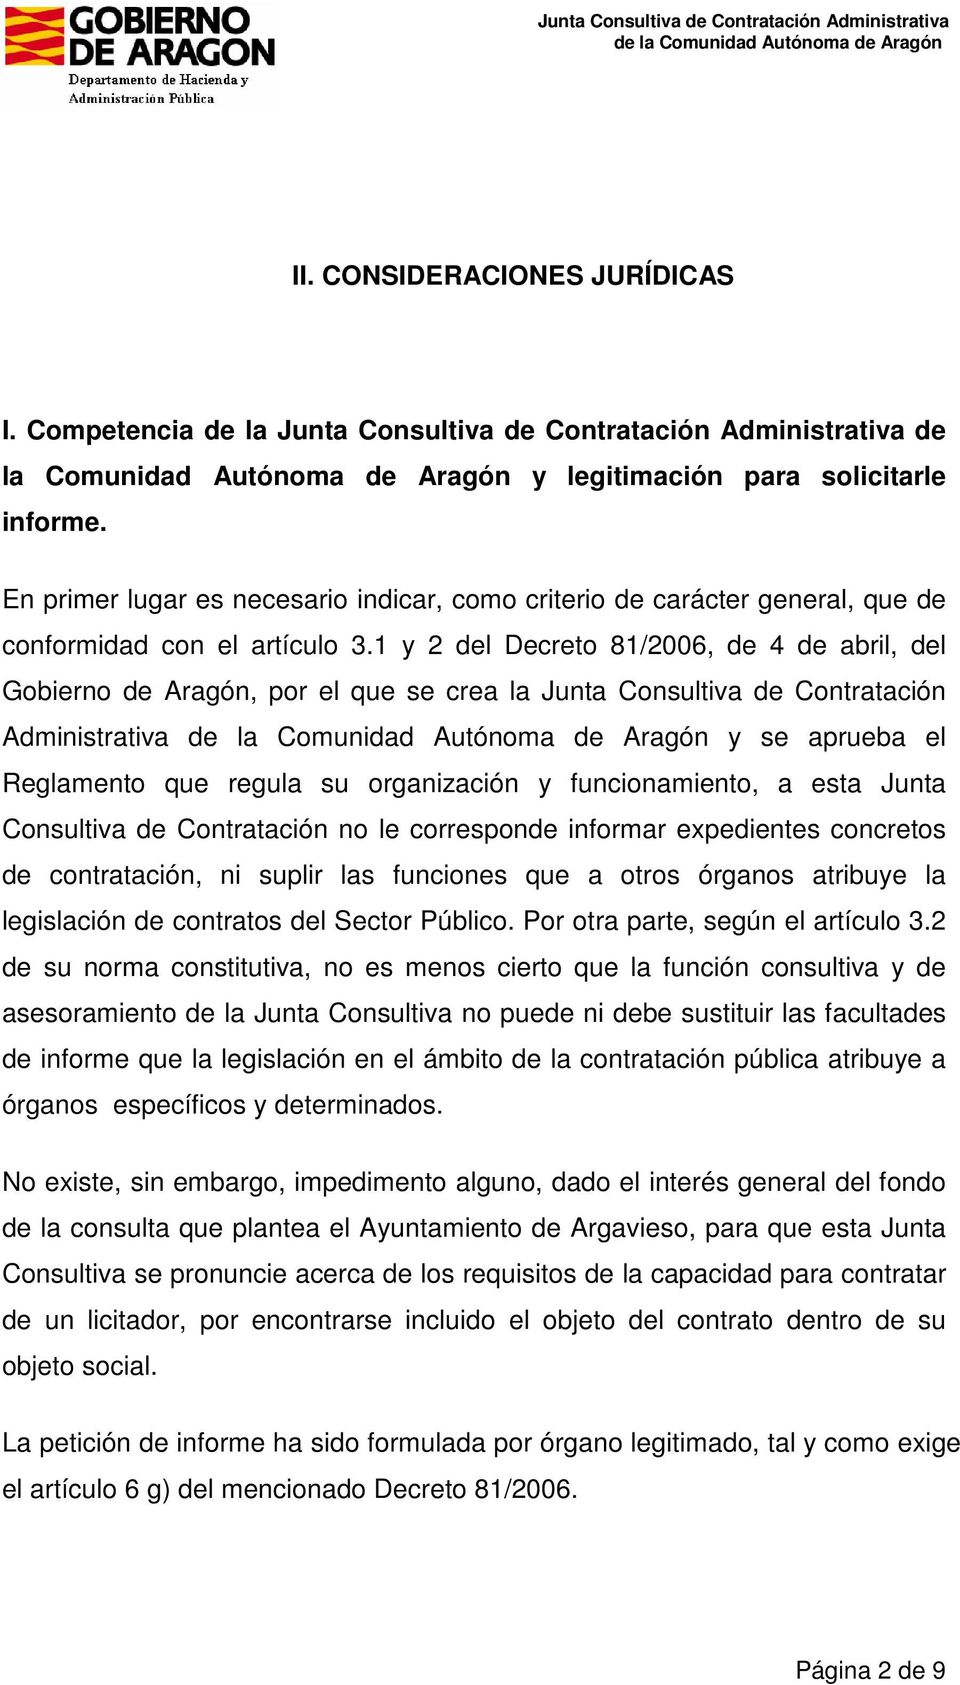 1 y 2 del Decreto 81/2006, de 4 de abril, del Gobierno de Aragón, por el que se crea la Junta Consultiva de Contratación Administrativa y se aprueba el Reglamento que regula su organización y